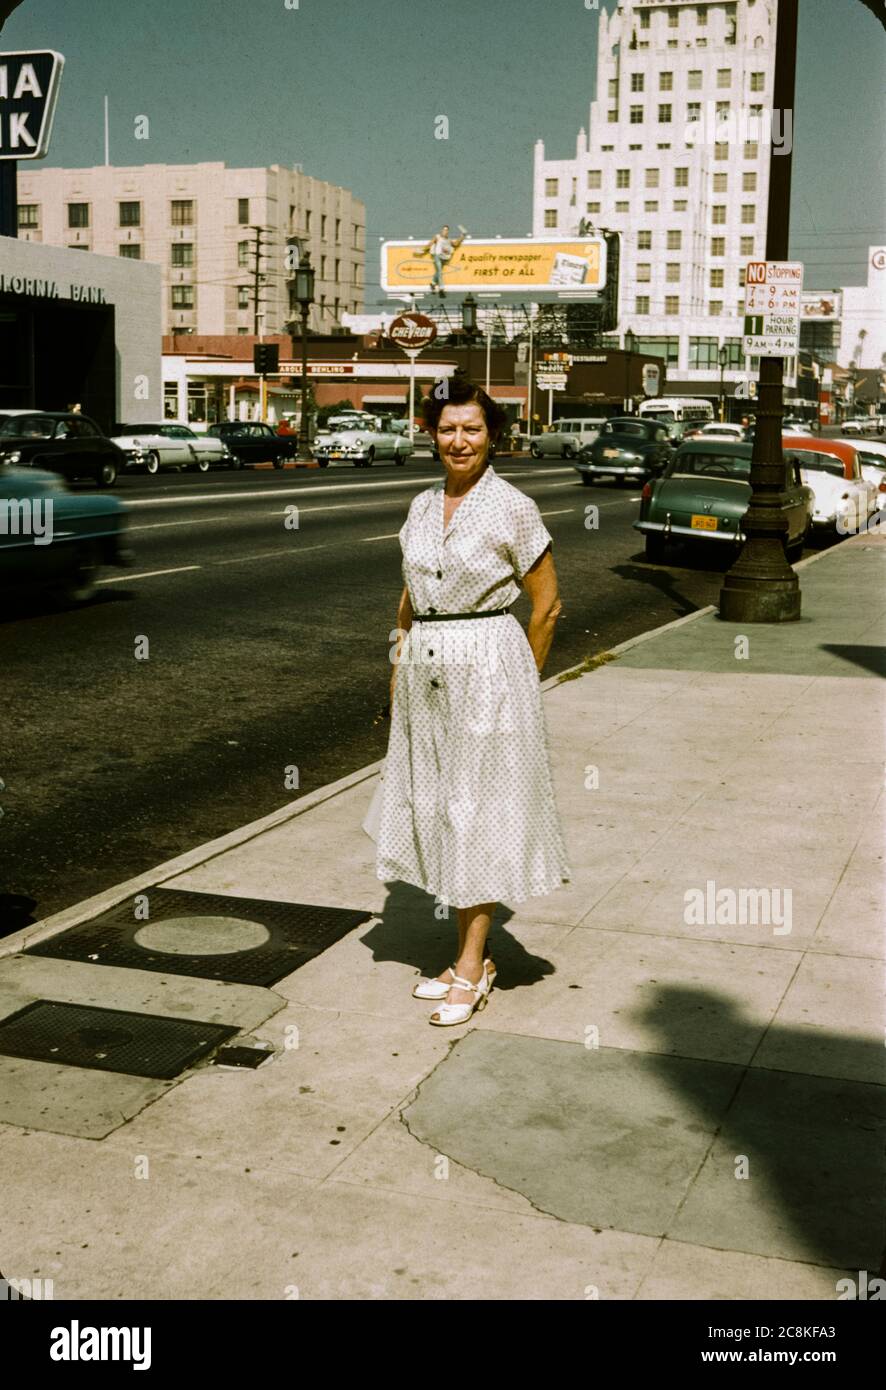 Frau, die in den 1950er Jahren auf dem Bürgersteig in der Innenstadt von Los Angeles, Kalifornien, stand. Plakate und 50er Jahre Autos sind im Hintergrund, einschließlich einer Plakatwand für die Los Angeles Times Zeitung. Stockfoto